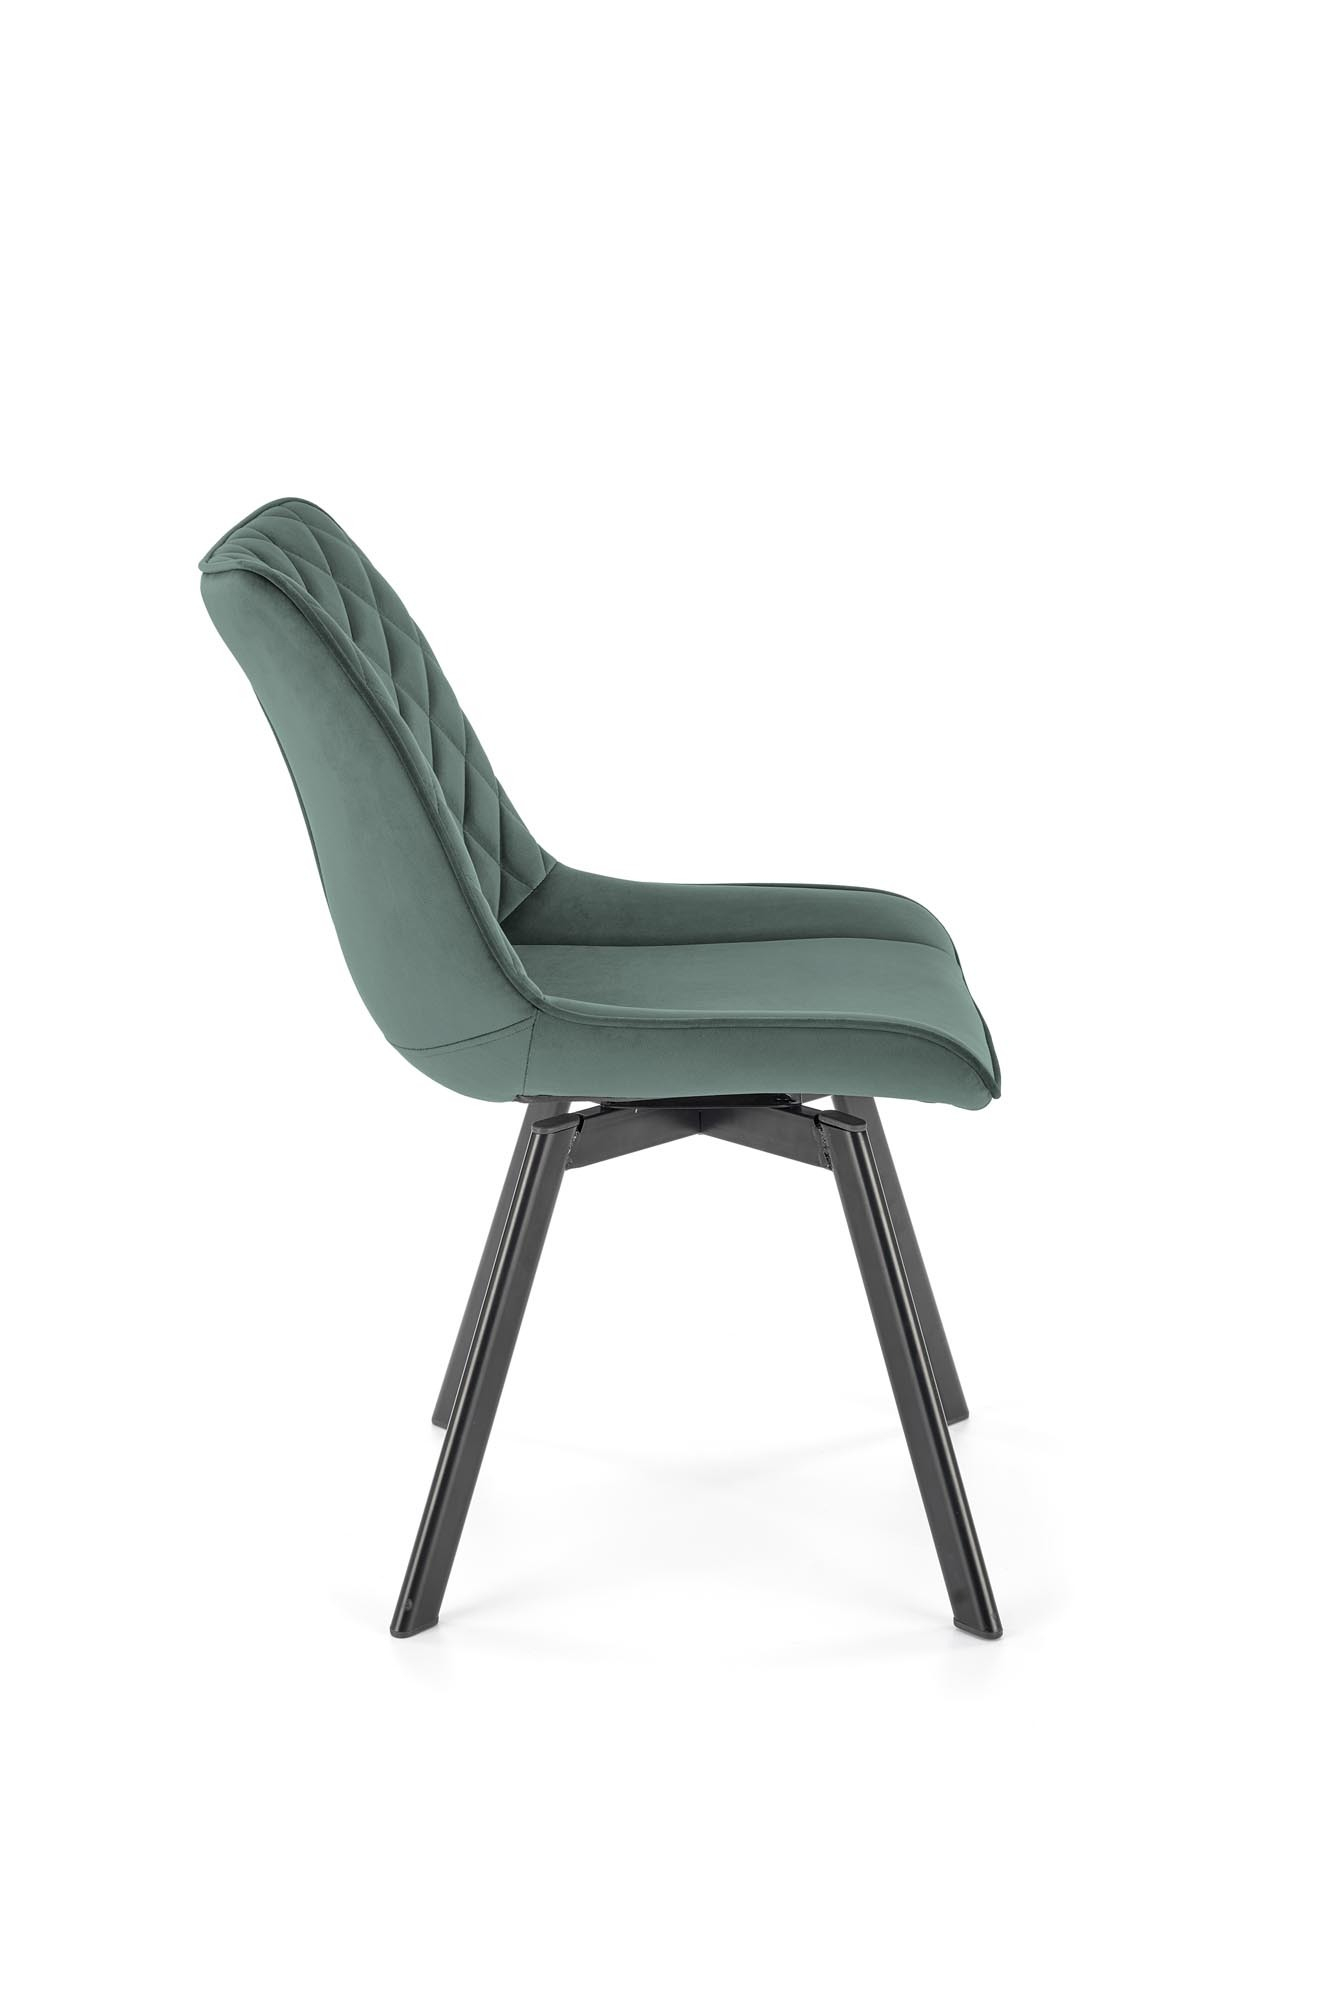 Krzesło z funkcją obrotu K520 krzesło nogi - czarne, siedzisko - ciemny zielony